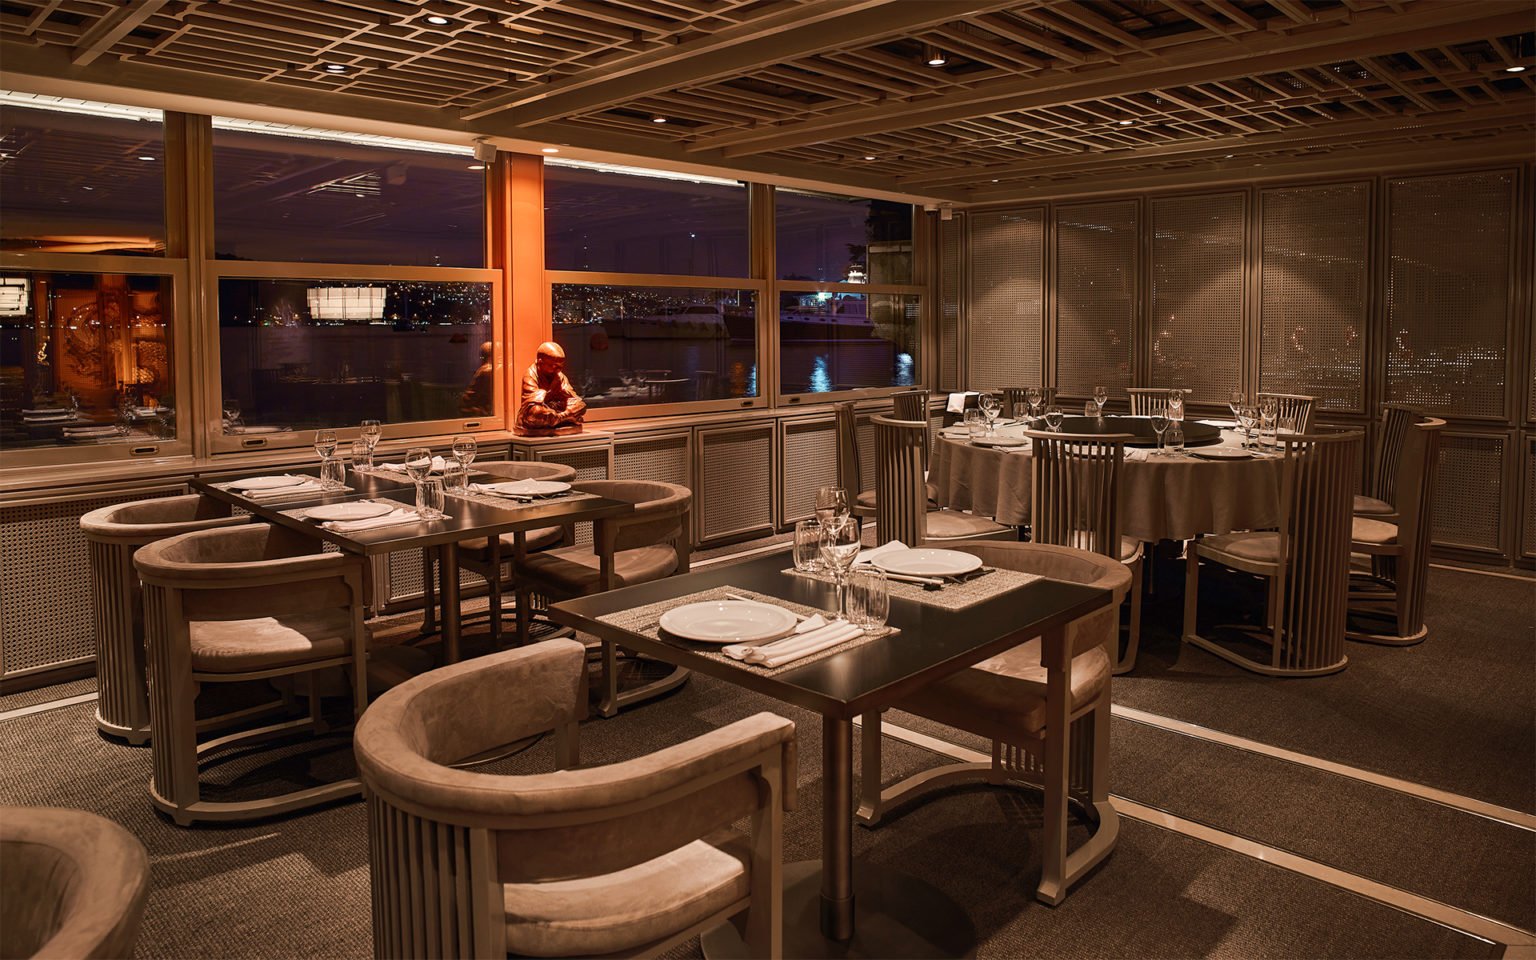 Dragon Restaurant, Turkey - Restaurant Interior Design on Love That Design